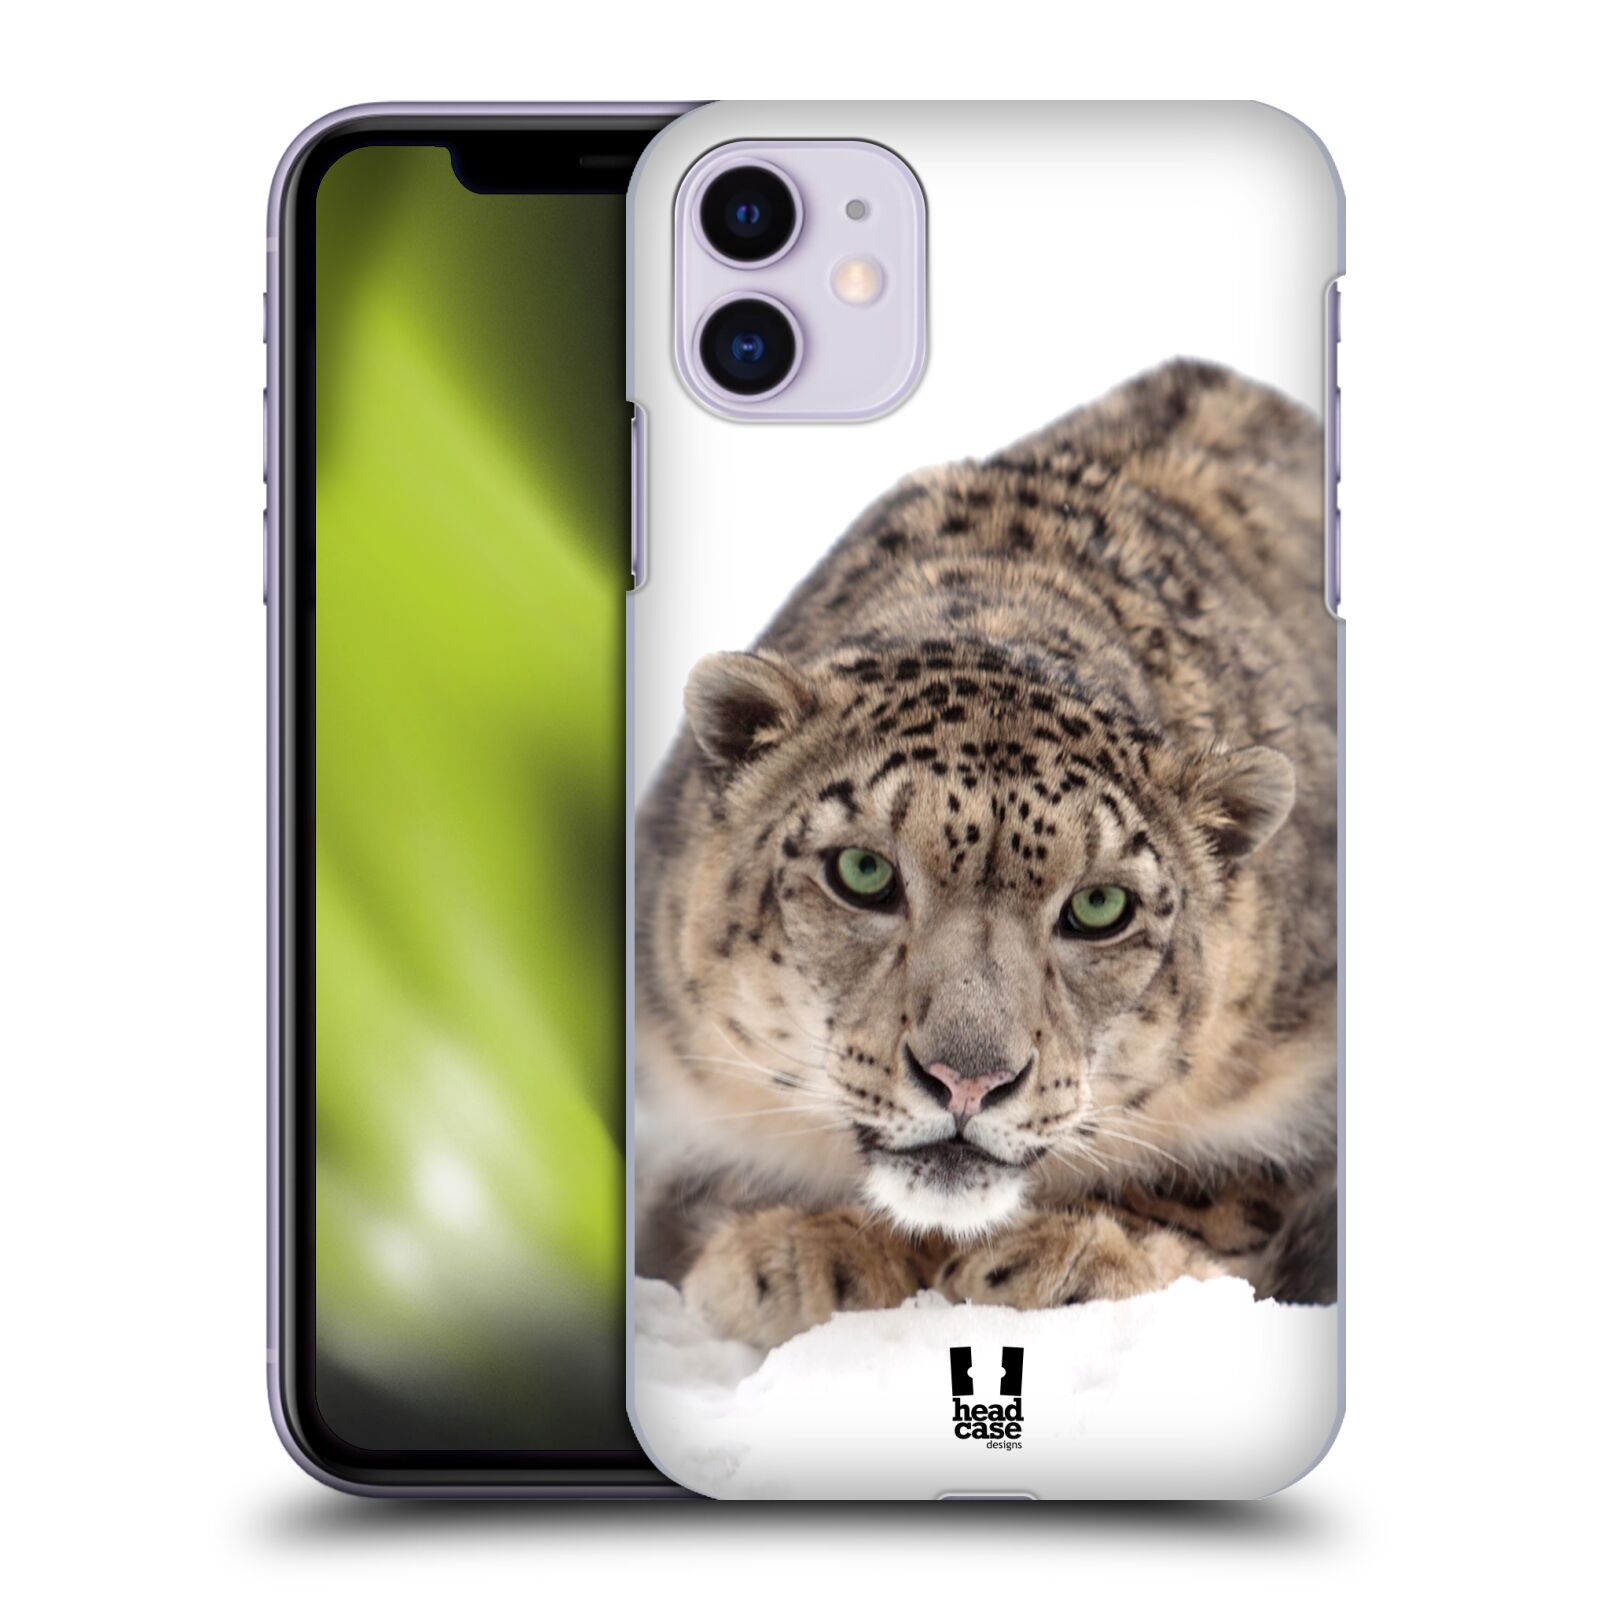 Pouzdro na mobil Apple Iphone 11 - HEAD CASE - vzor Divočina, Divoký život a zvířata foto SNĚŽNÝ LEOPARD